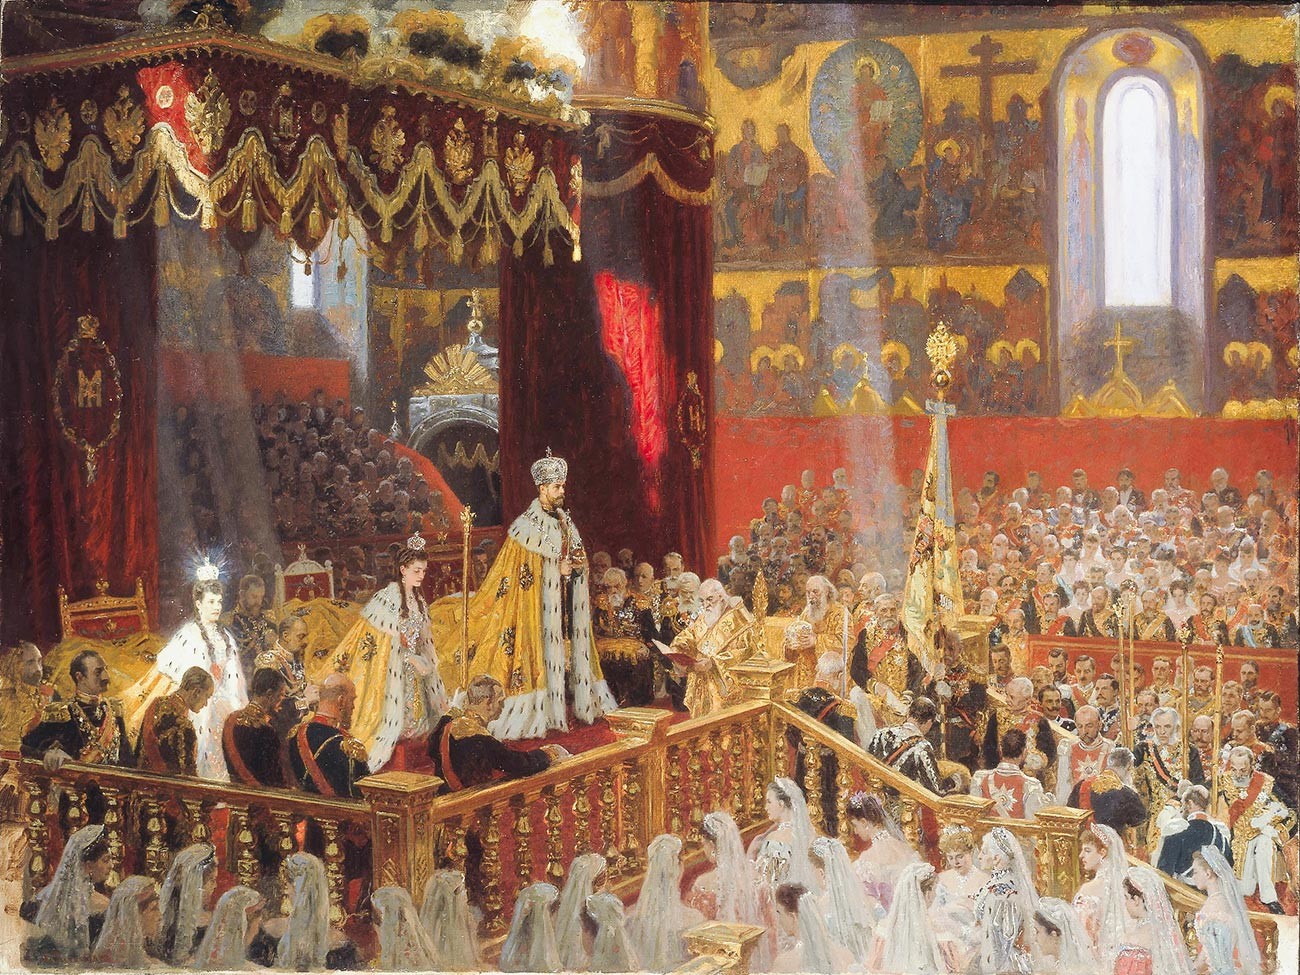 ウスペンスキー大聖堂で行われたニコライ2世の戴冠式